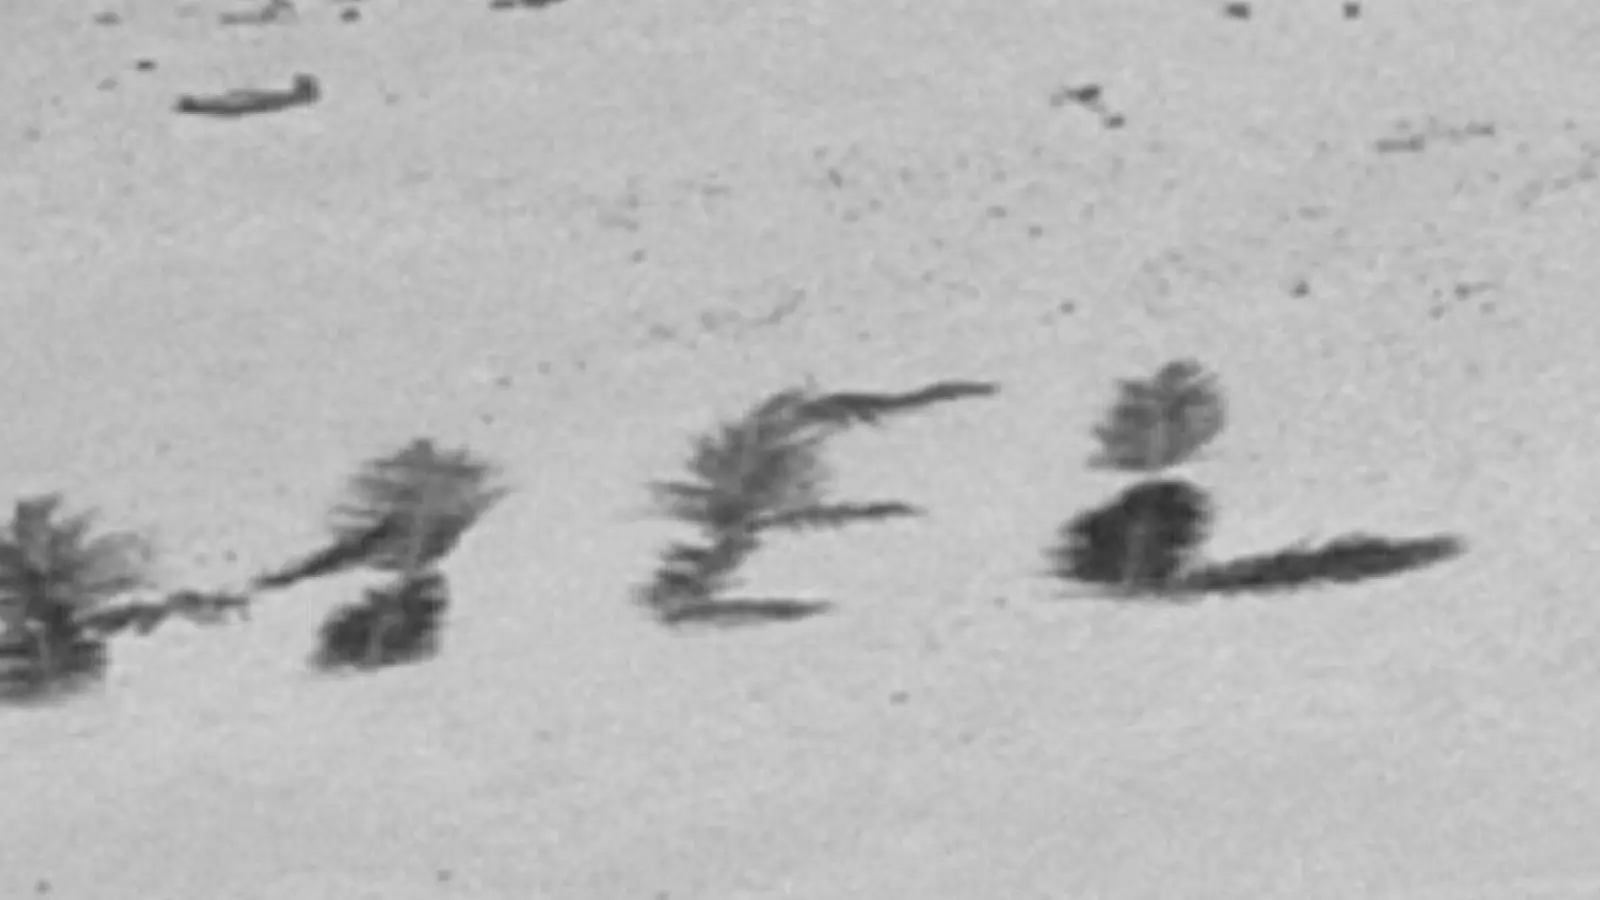 „Bemerkenswertes Zeugnis ihres Willens, gefunden zu werden“: „Help“ mit Palmwedeln auf Sand geschrieben. (Foto: U.S. Coast Guard/dpa)